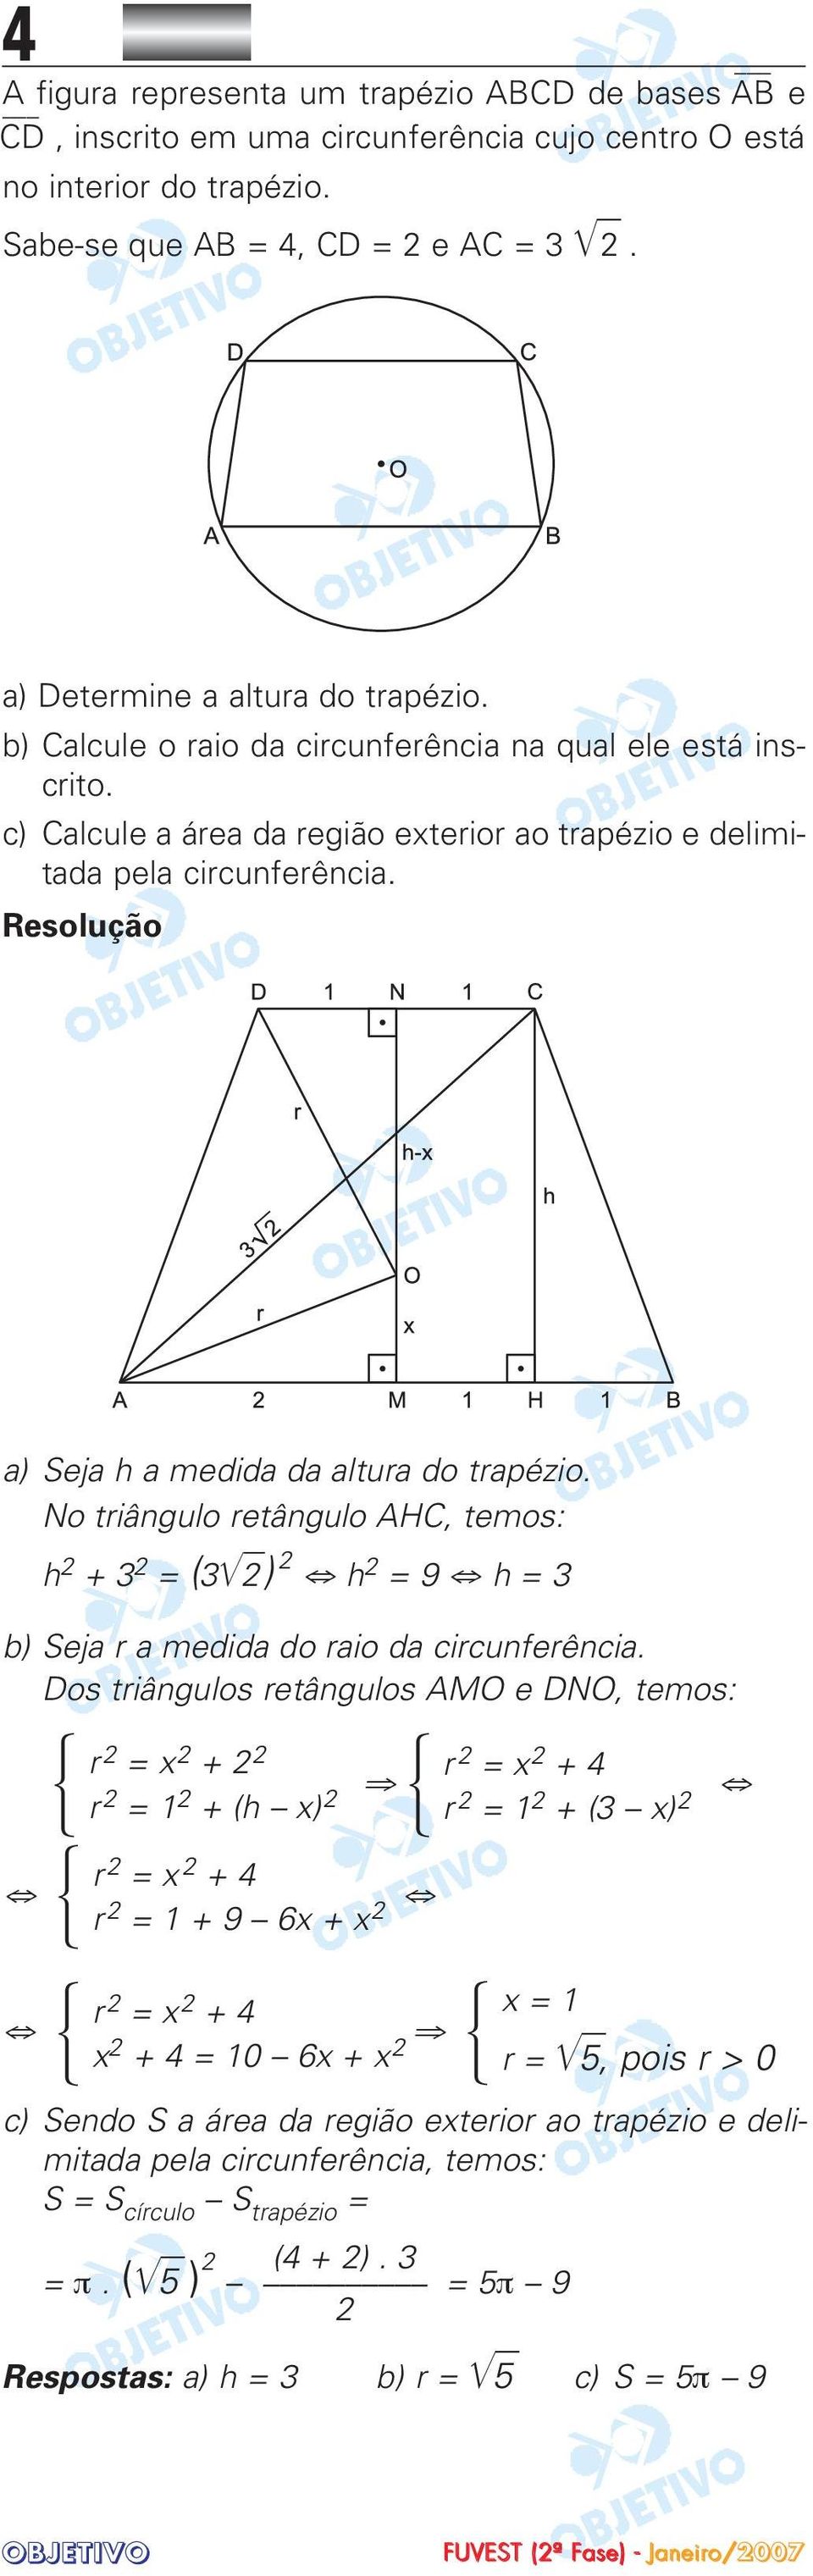 No triângulo retângulo AHC, temos: h + 3 = (3) h = 9 h = 3 b) Seja r a medida do raio da circunferência.